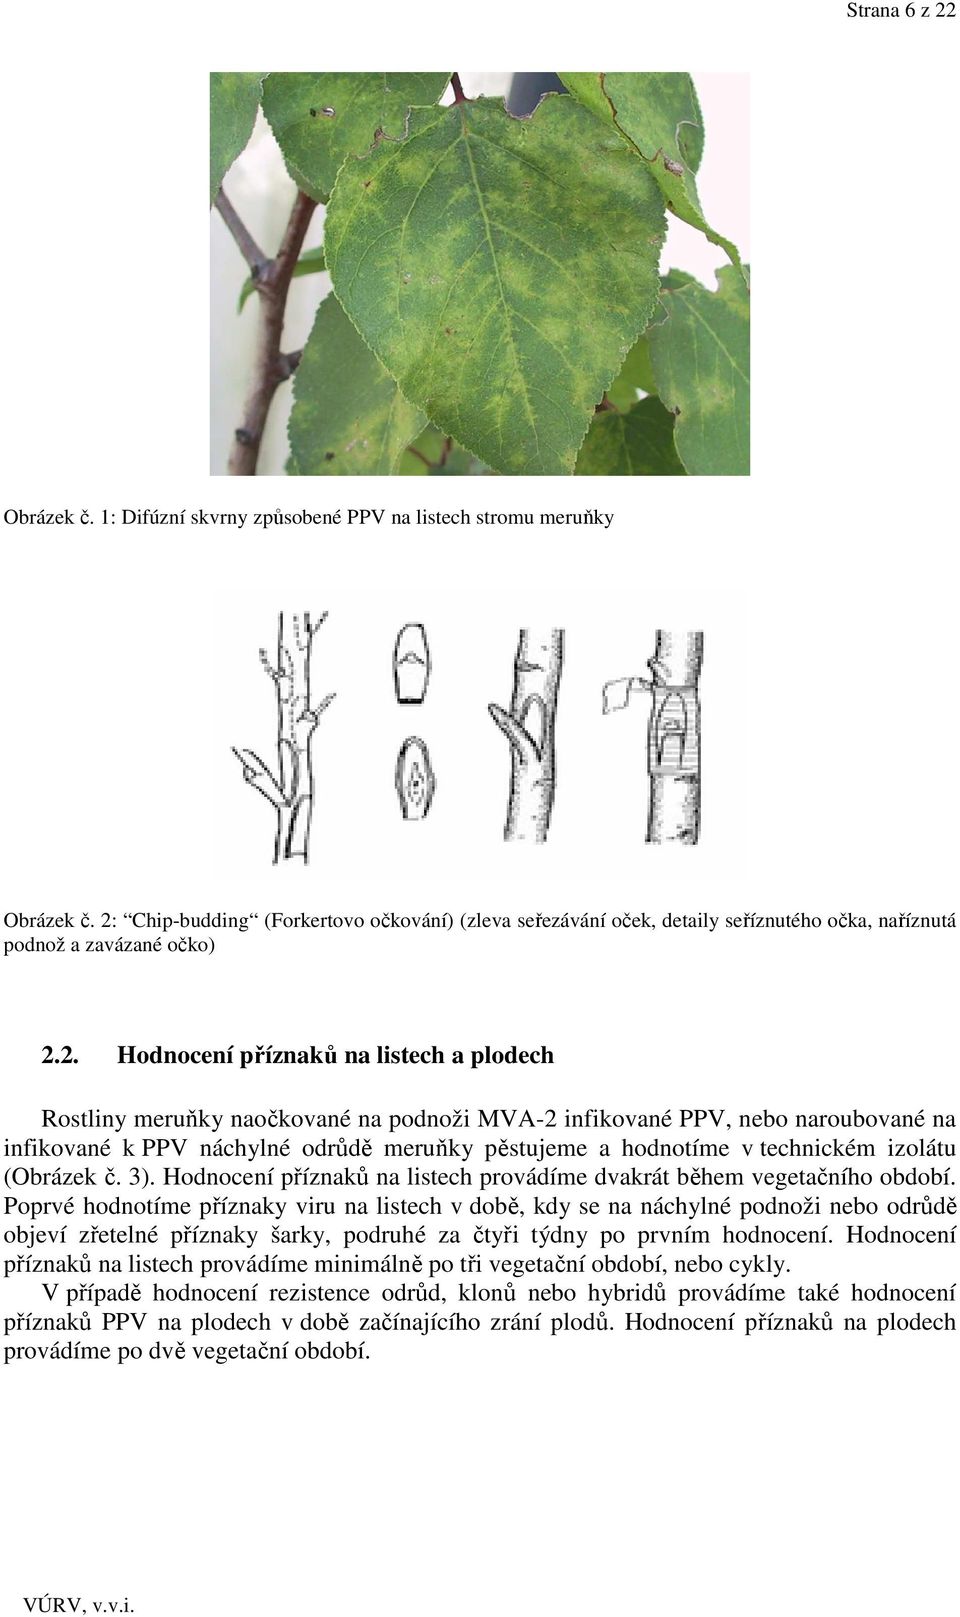 podnoži MVA-2 infikované PPV, nebo naroubované na infikované k PPV náchylné odrůdě meruňky pěstujeme a hodnotíme v technickém izolátu (Obrázek č. 3).